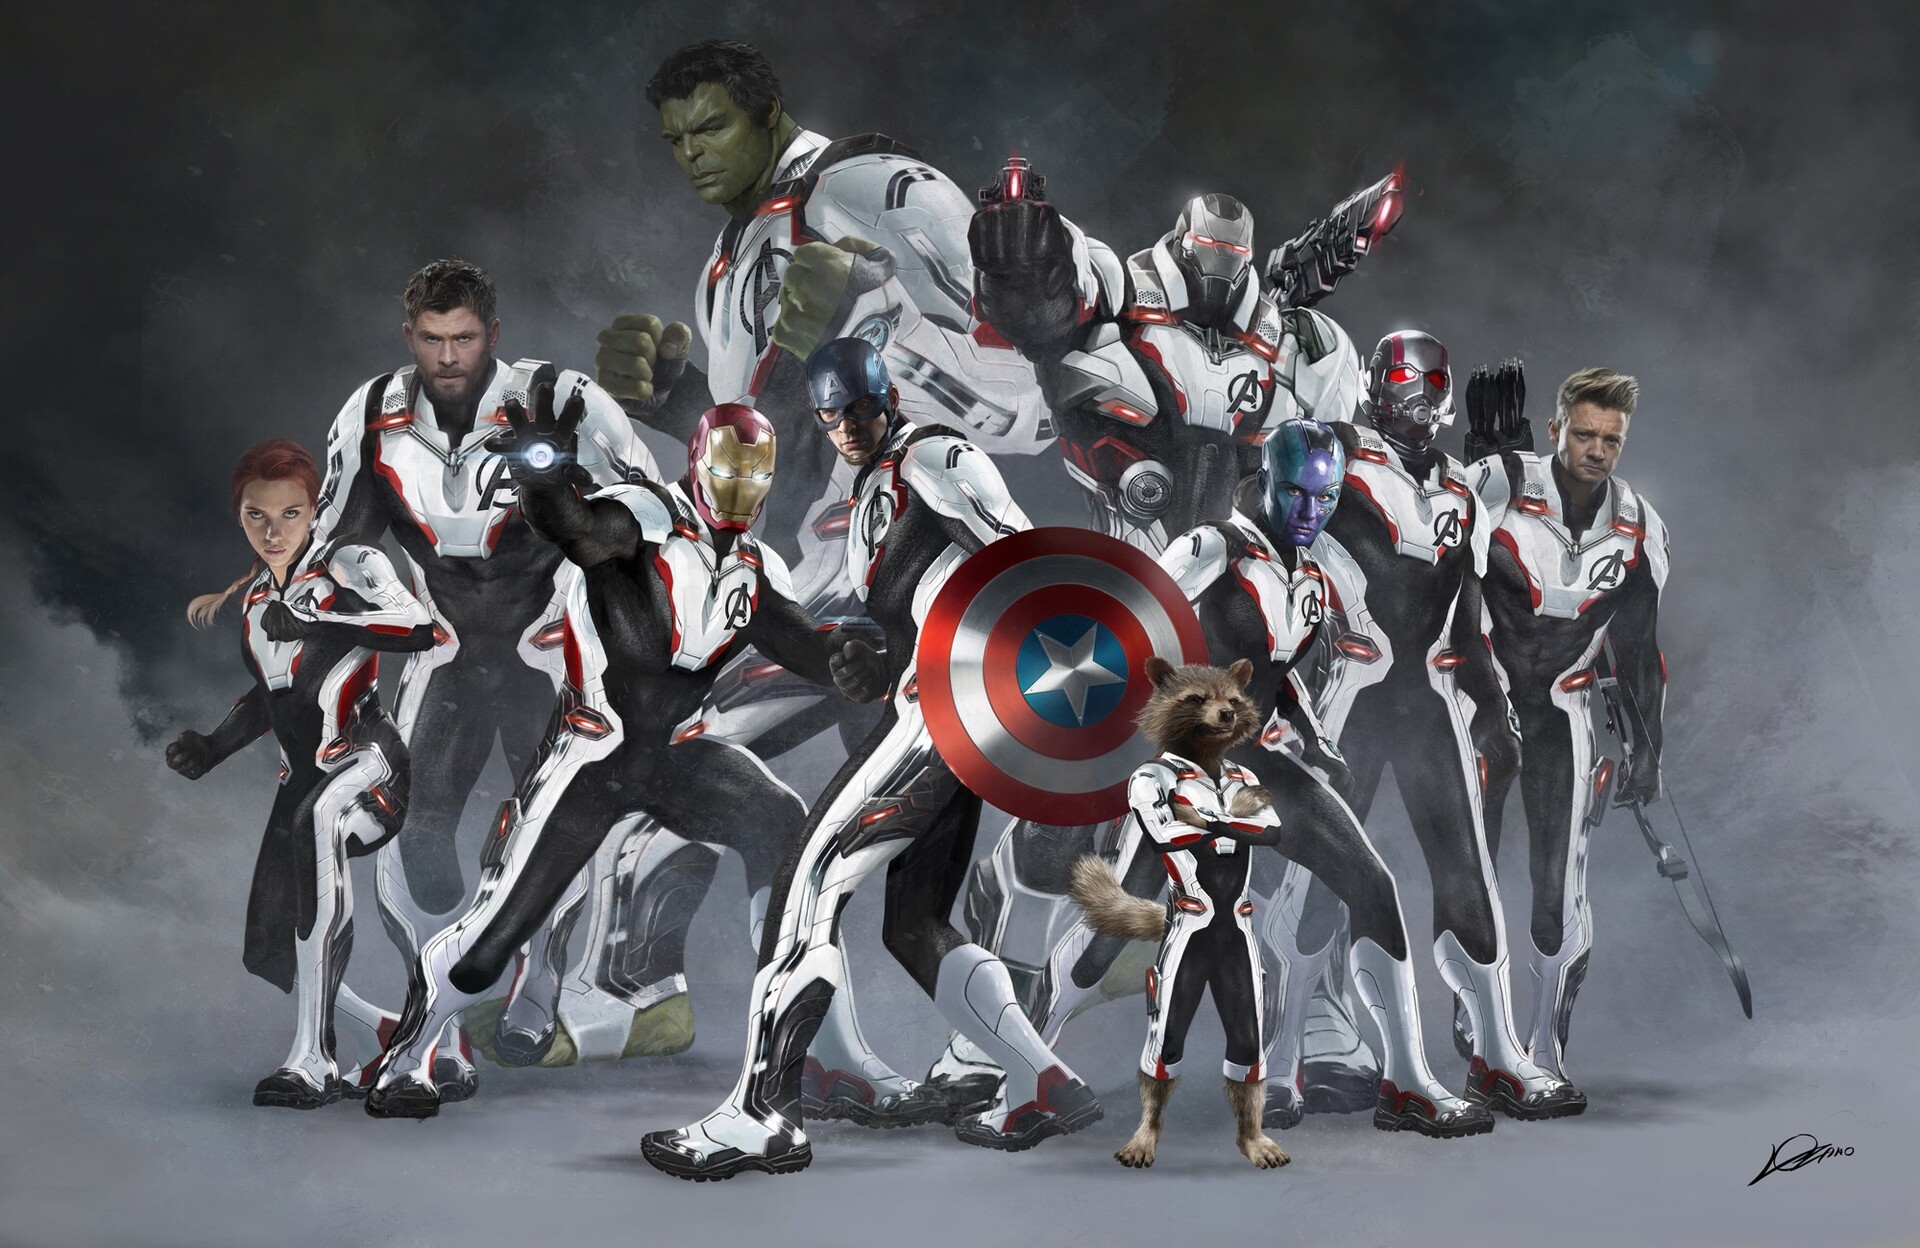 ArtStation - Avengers: End Game